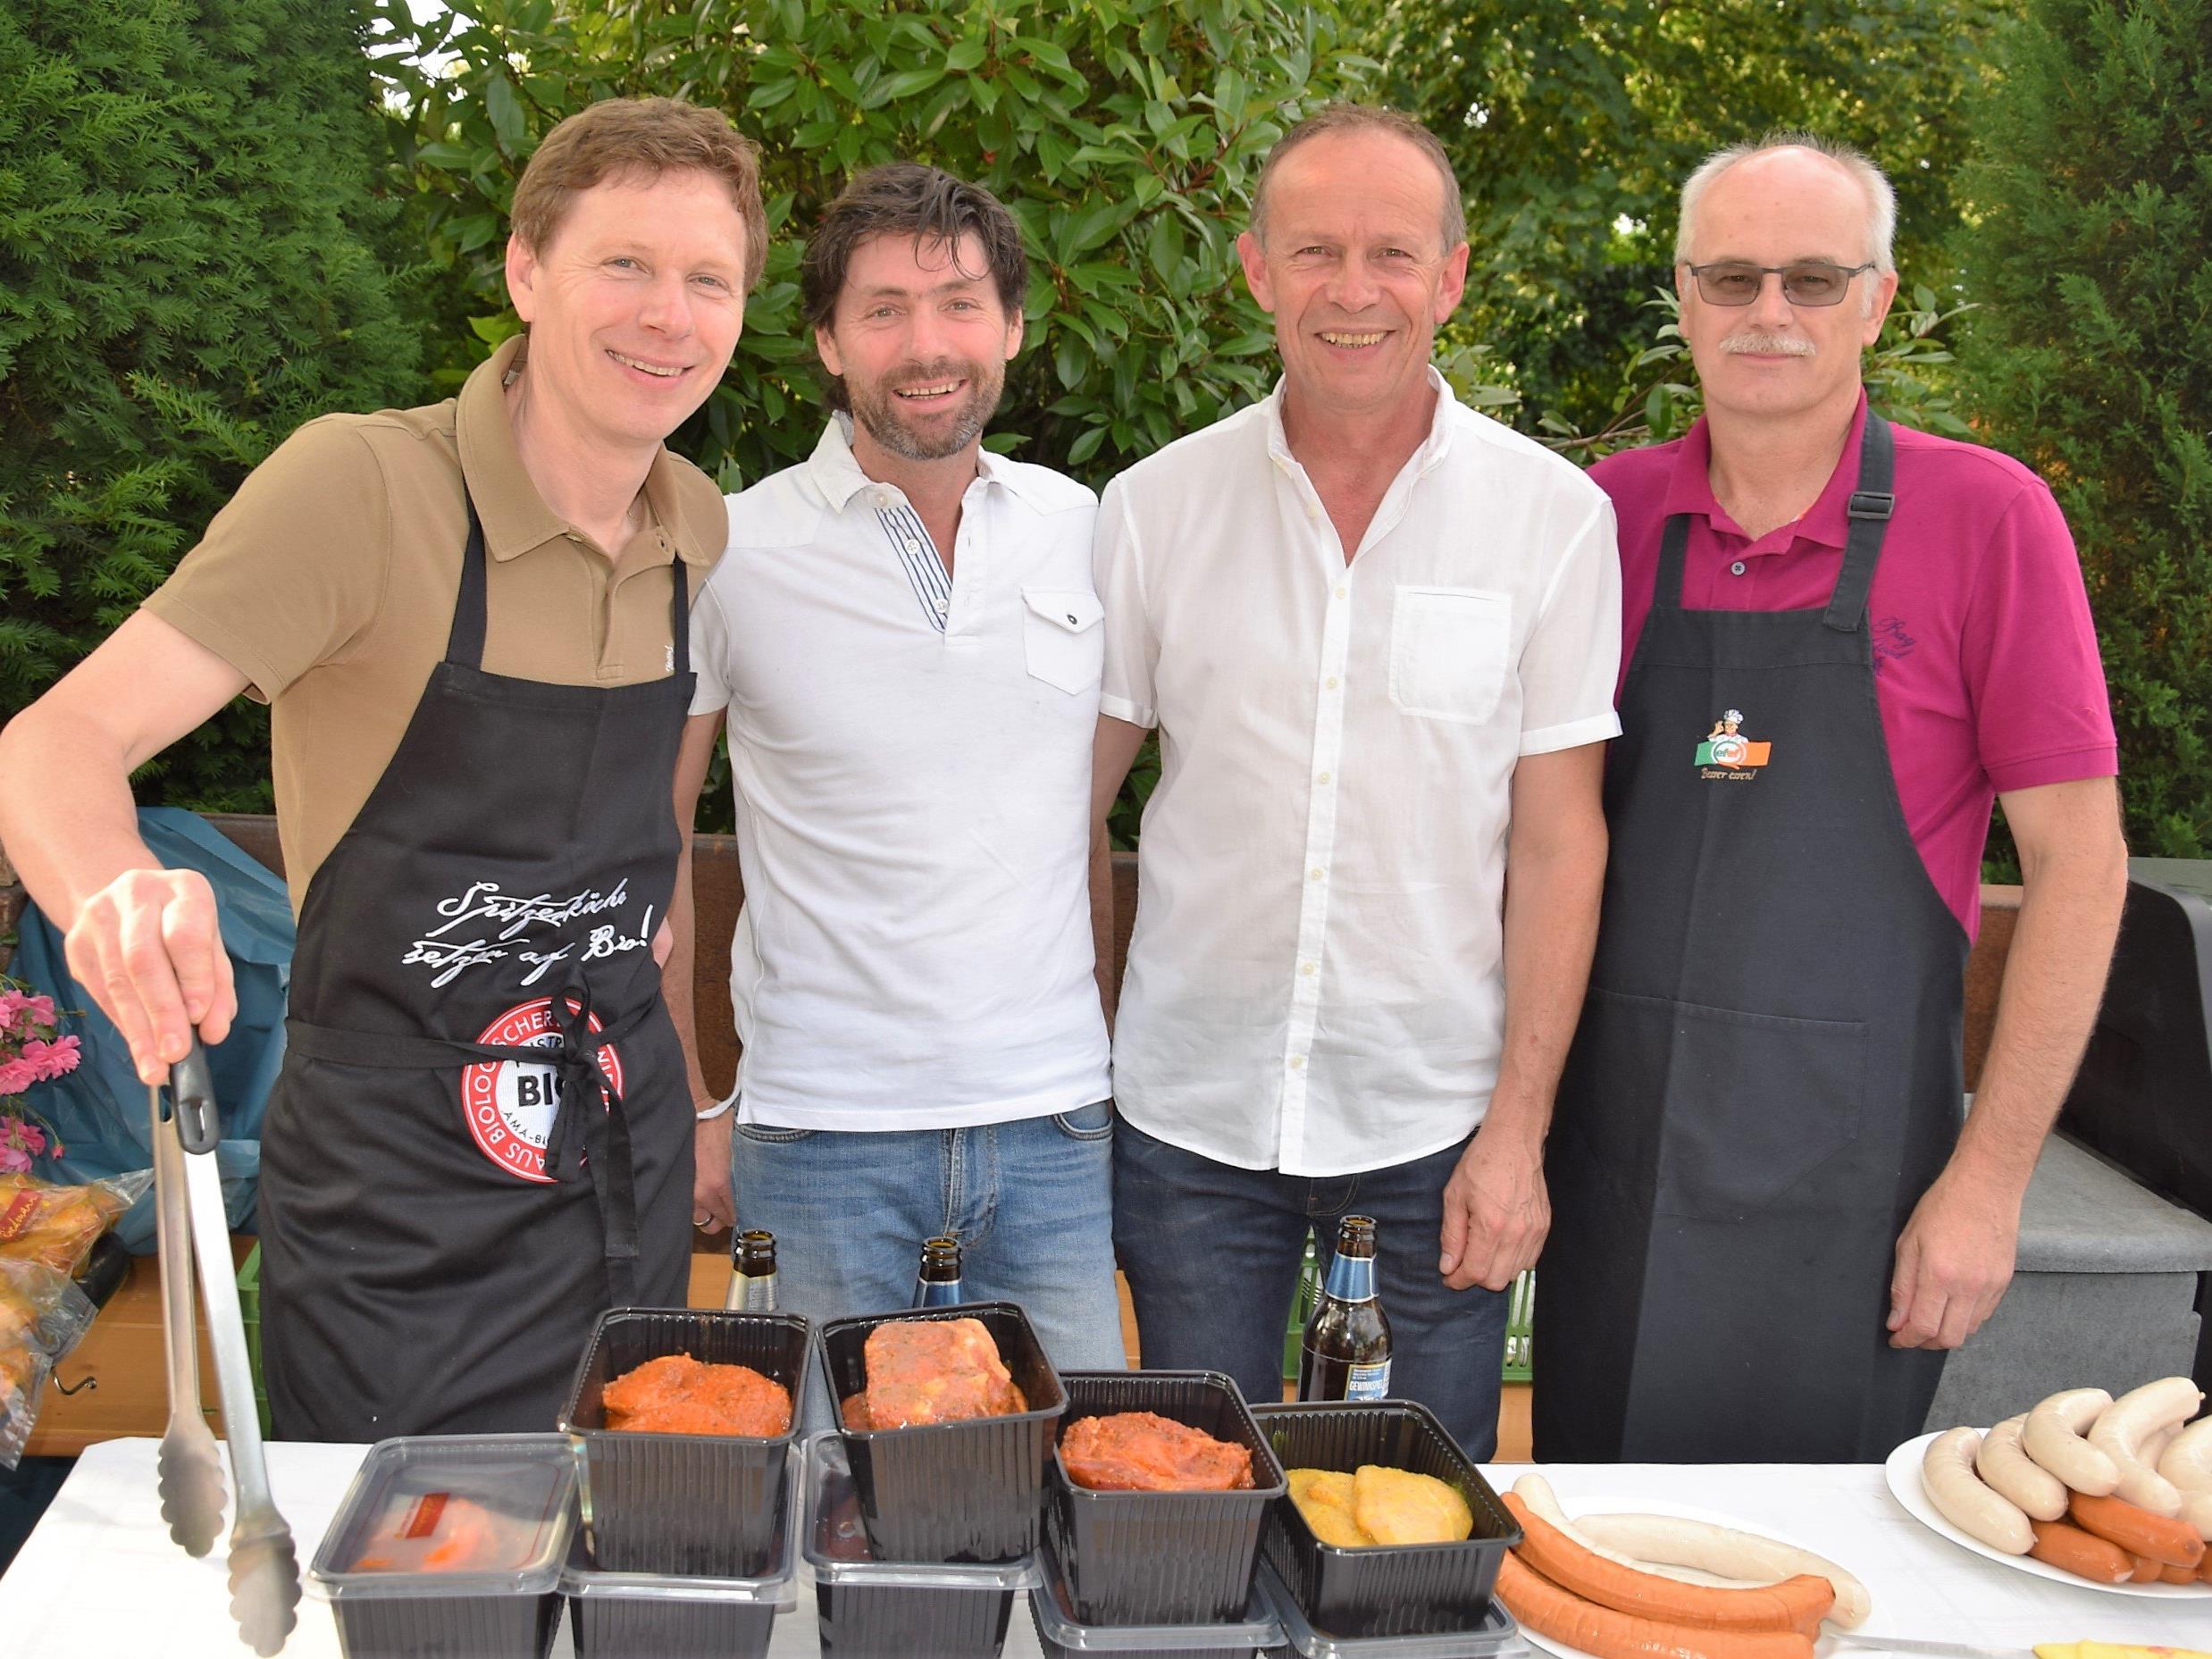 v.l.n.r. Werner und Arno Riedmann (Adeg der Markt), Franz Kopf und Willi Nachbauer verwöhnten die Besucher mit köstlichen Grillspezialitäten